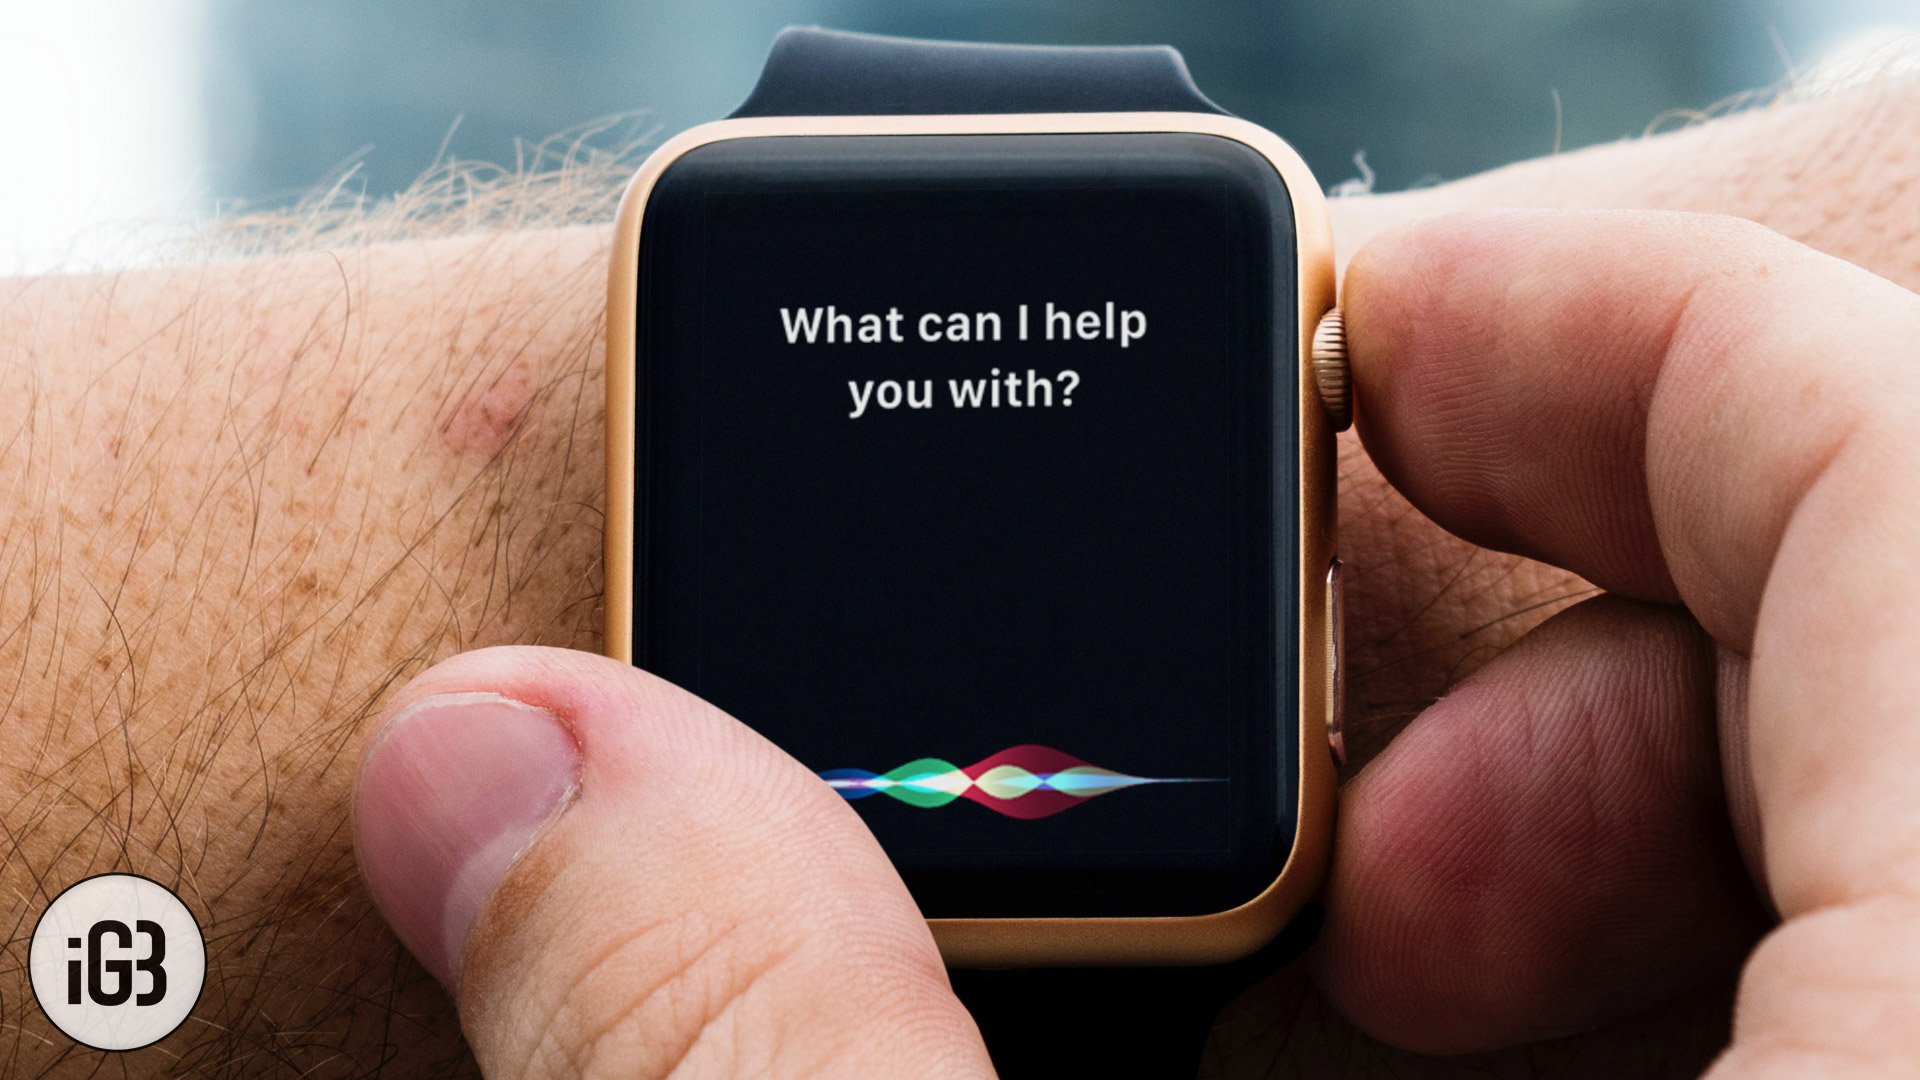 Siri Tidak Bekerja Apple Watch? Inilah Cara Memperbaiki Masalah Ini